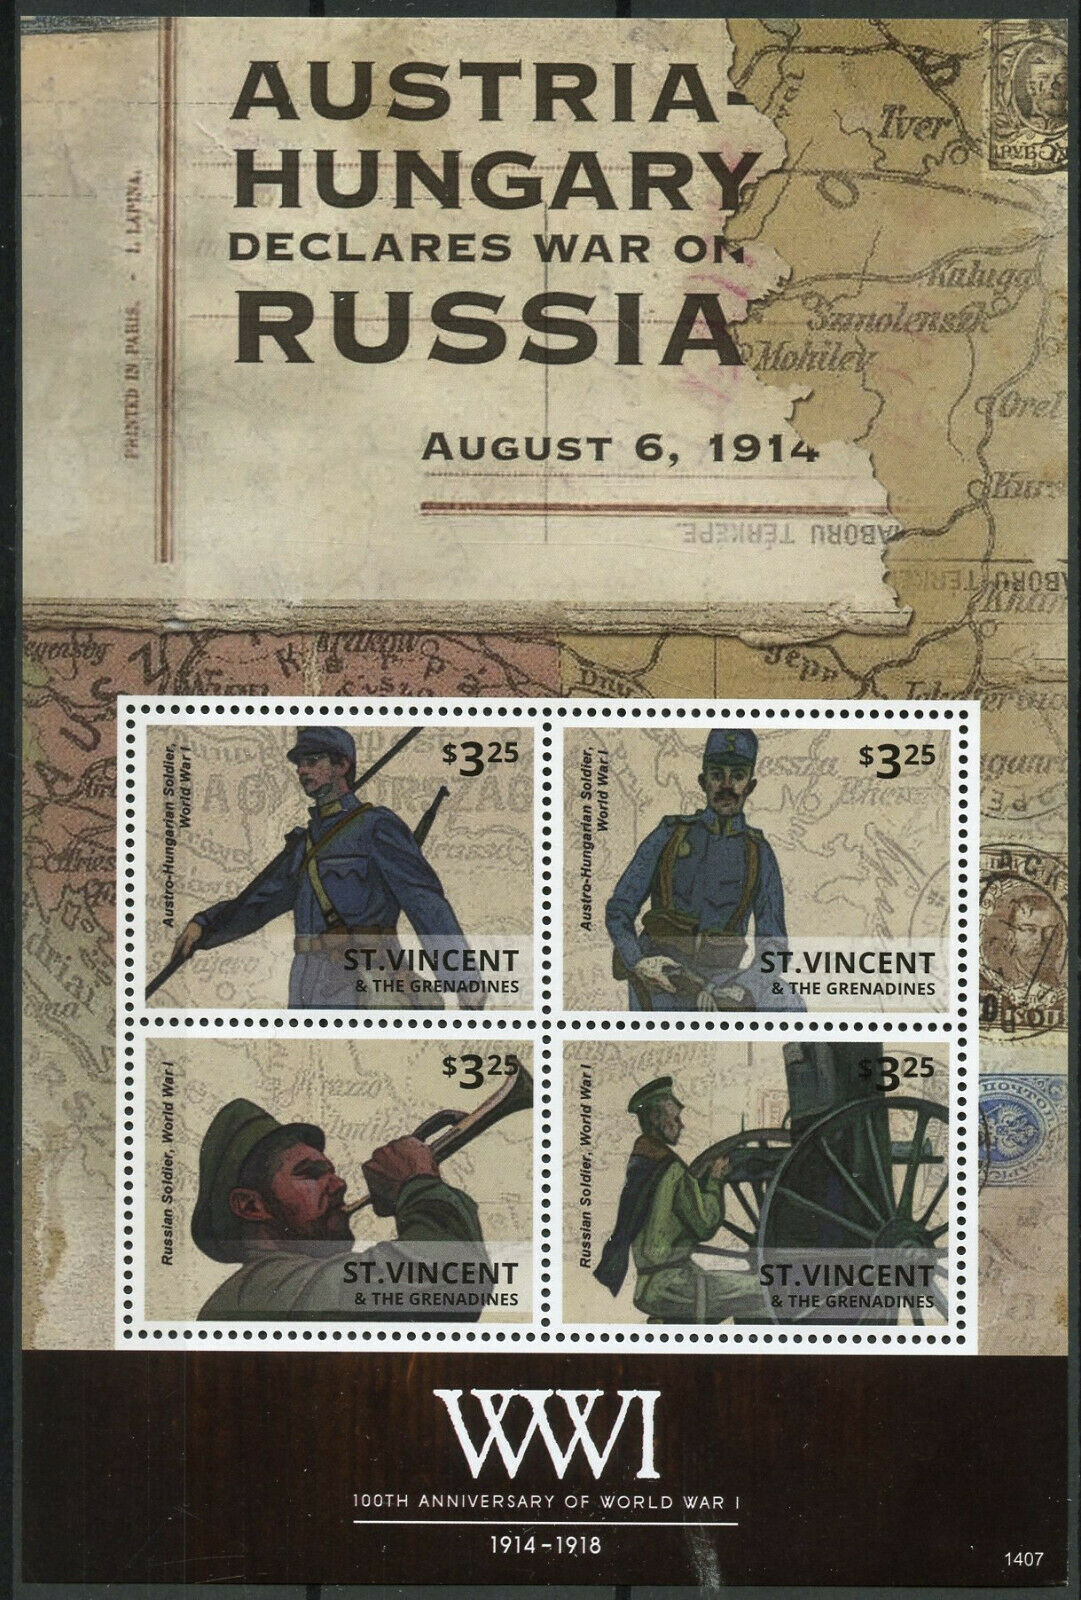 St Vincent & Grenadines 2014 MNH WWI World War I Austria-Hungary 4v M/S Stamps